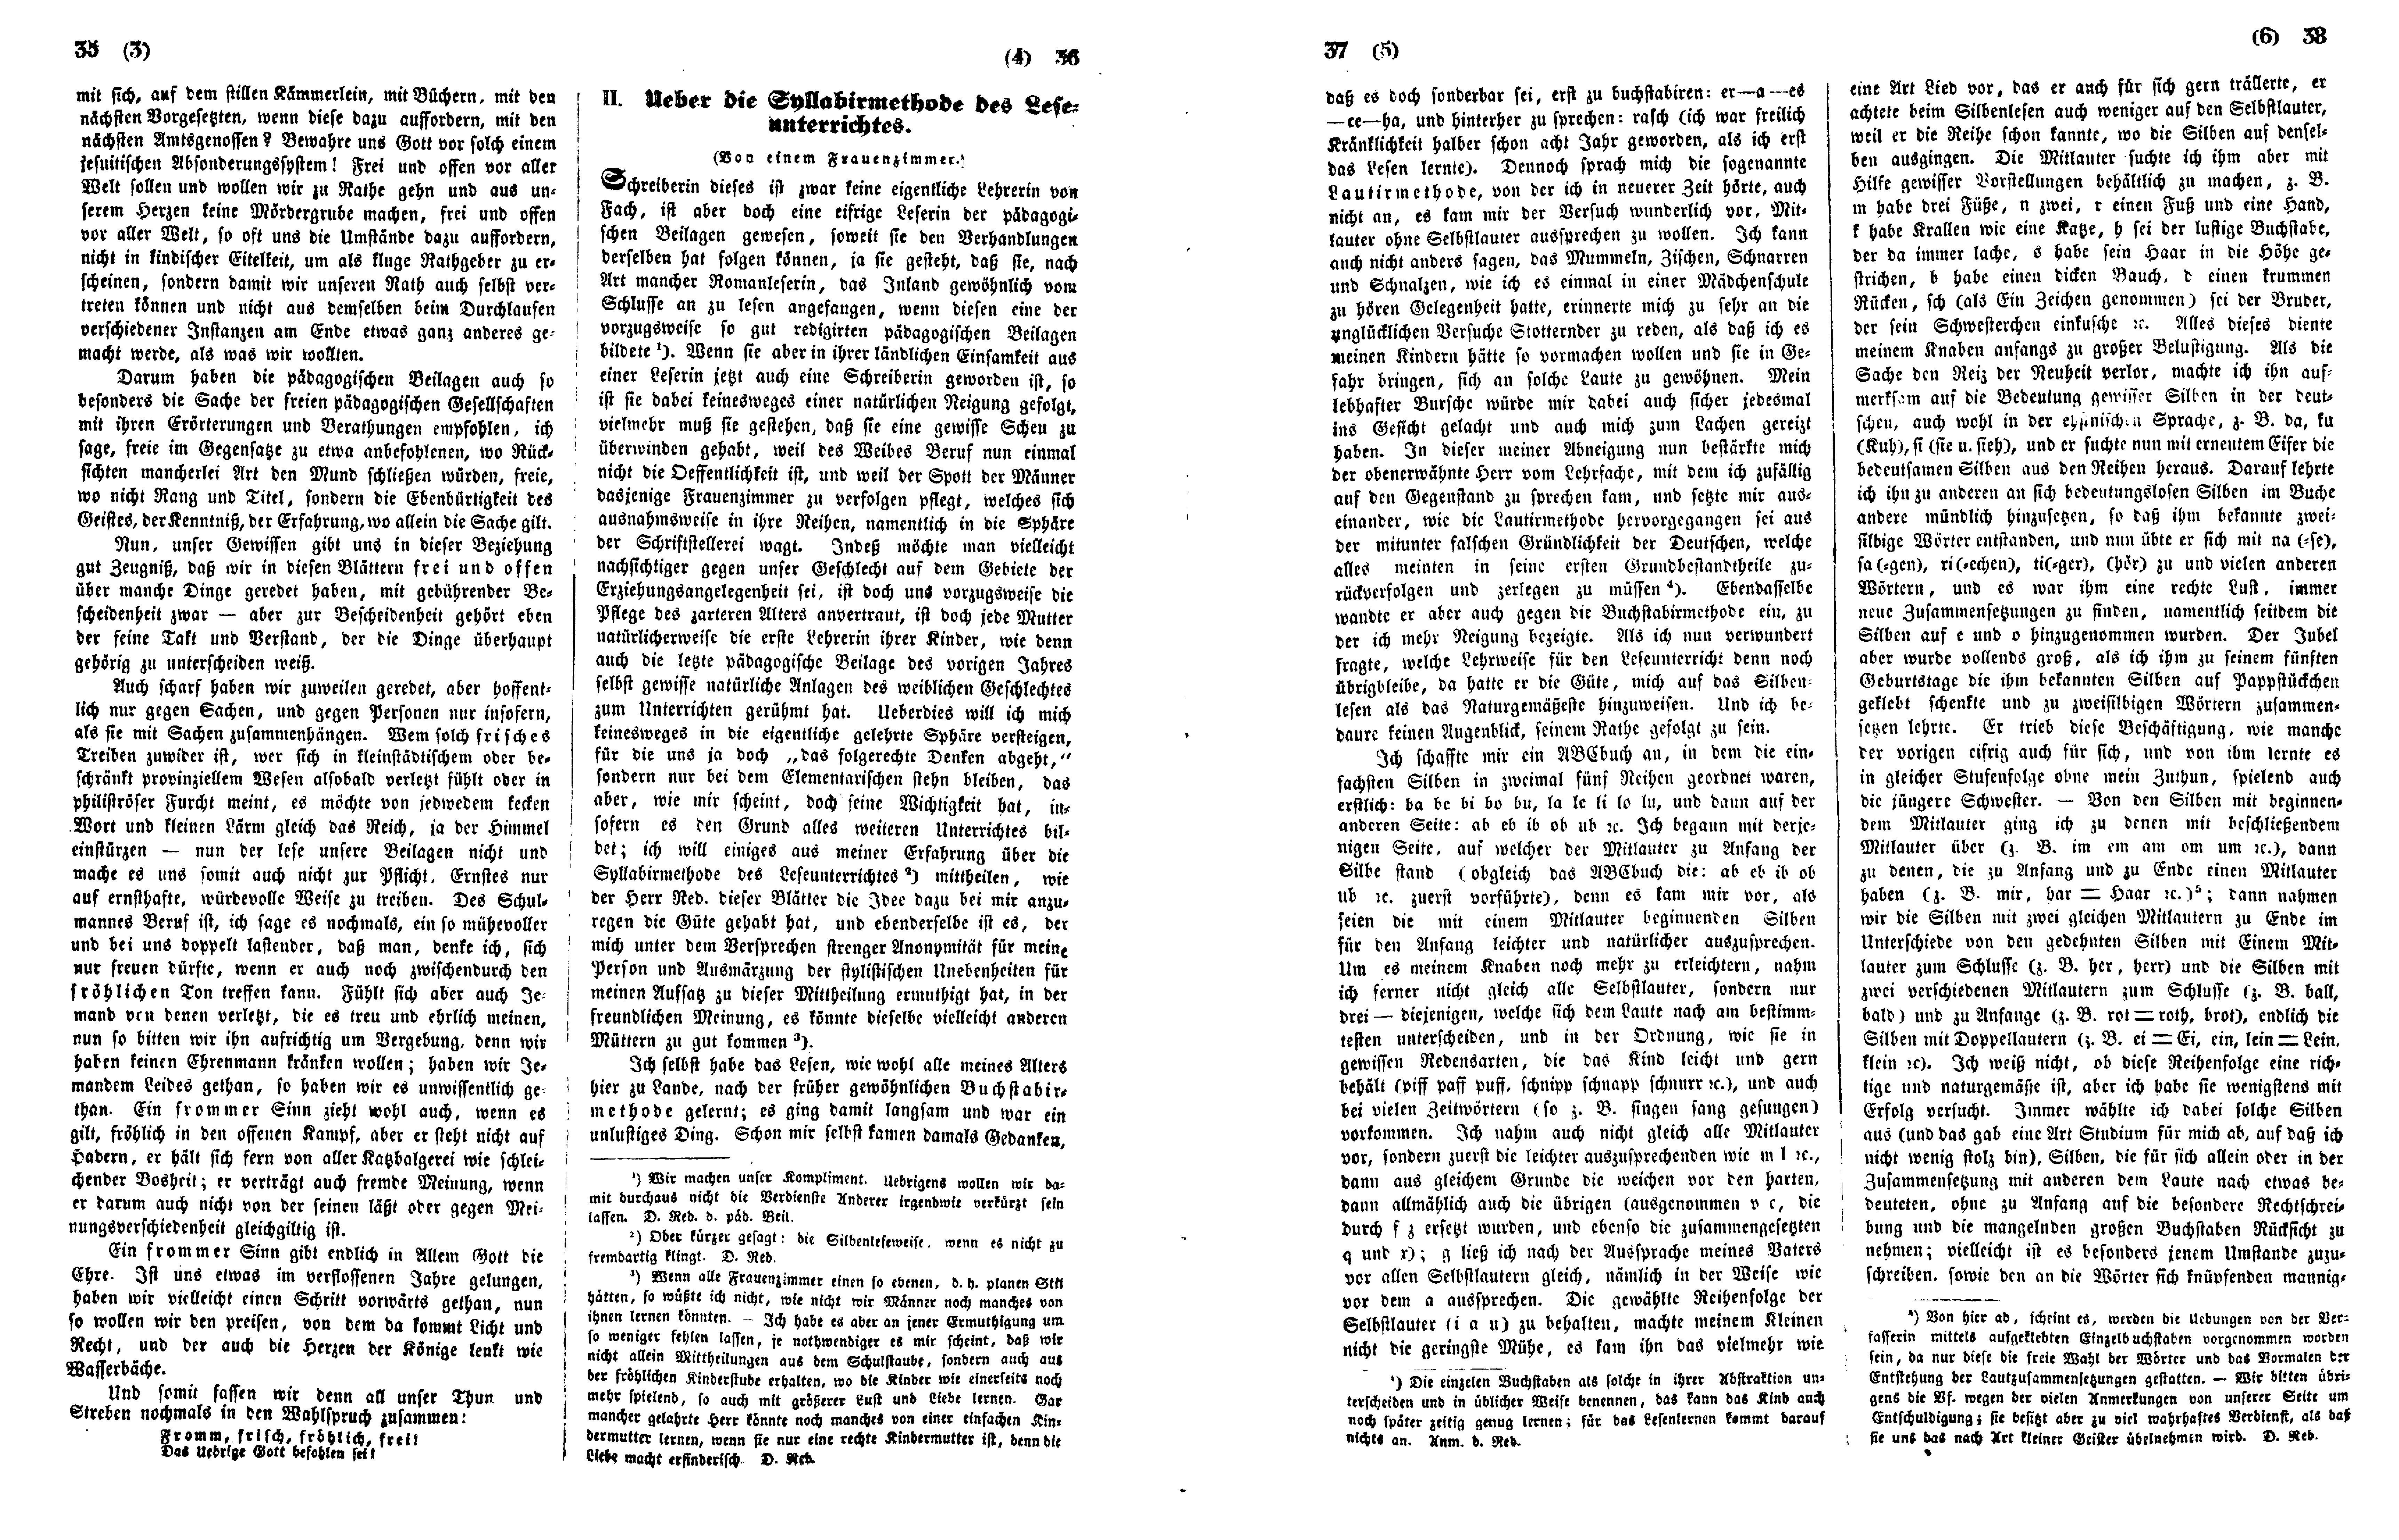 Das Inland [13] (1848) | 14. (35-38) Основной текст